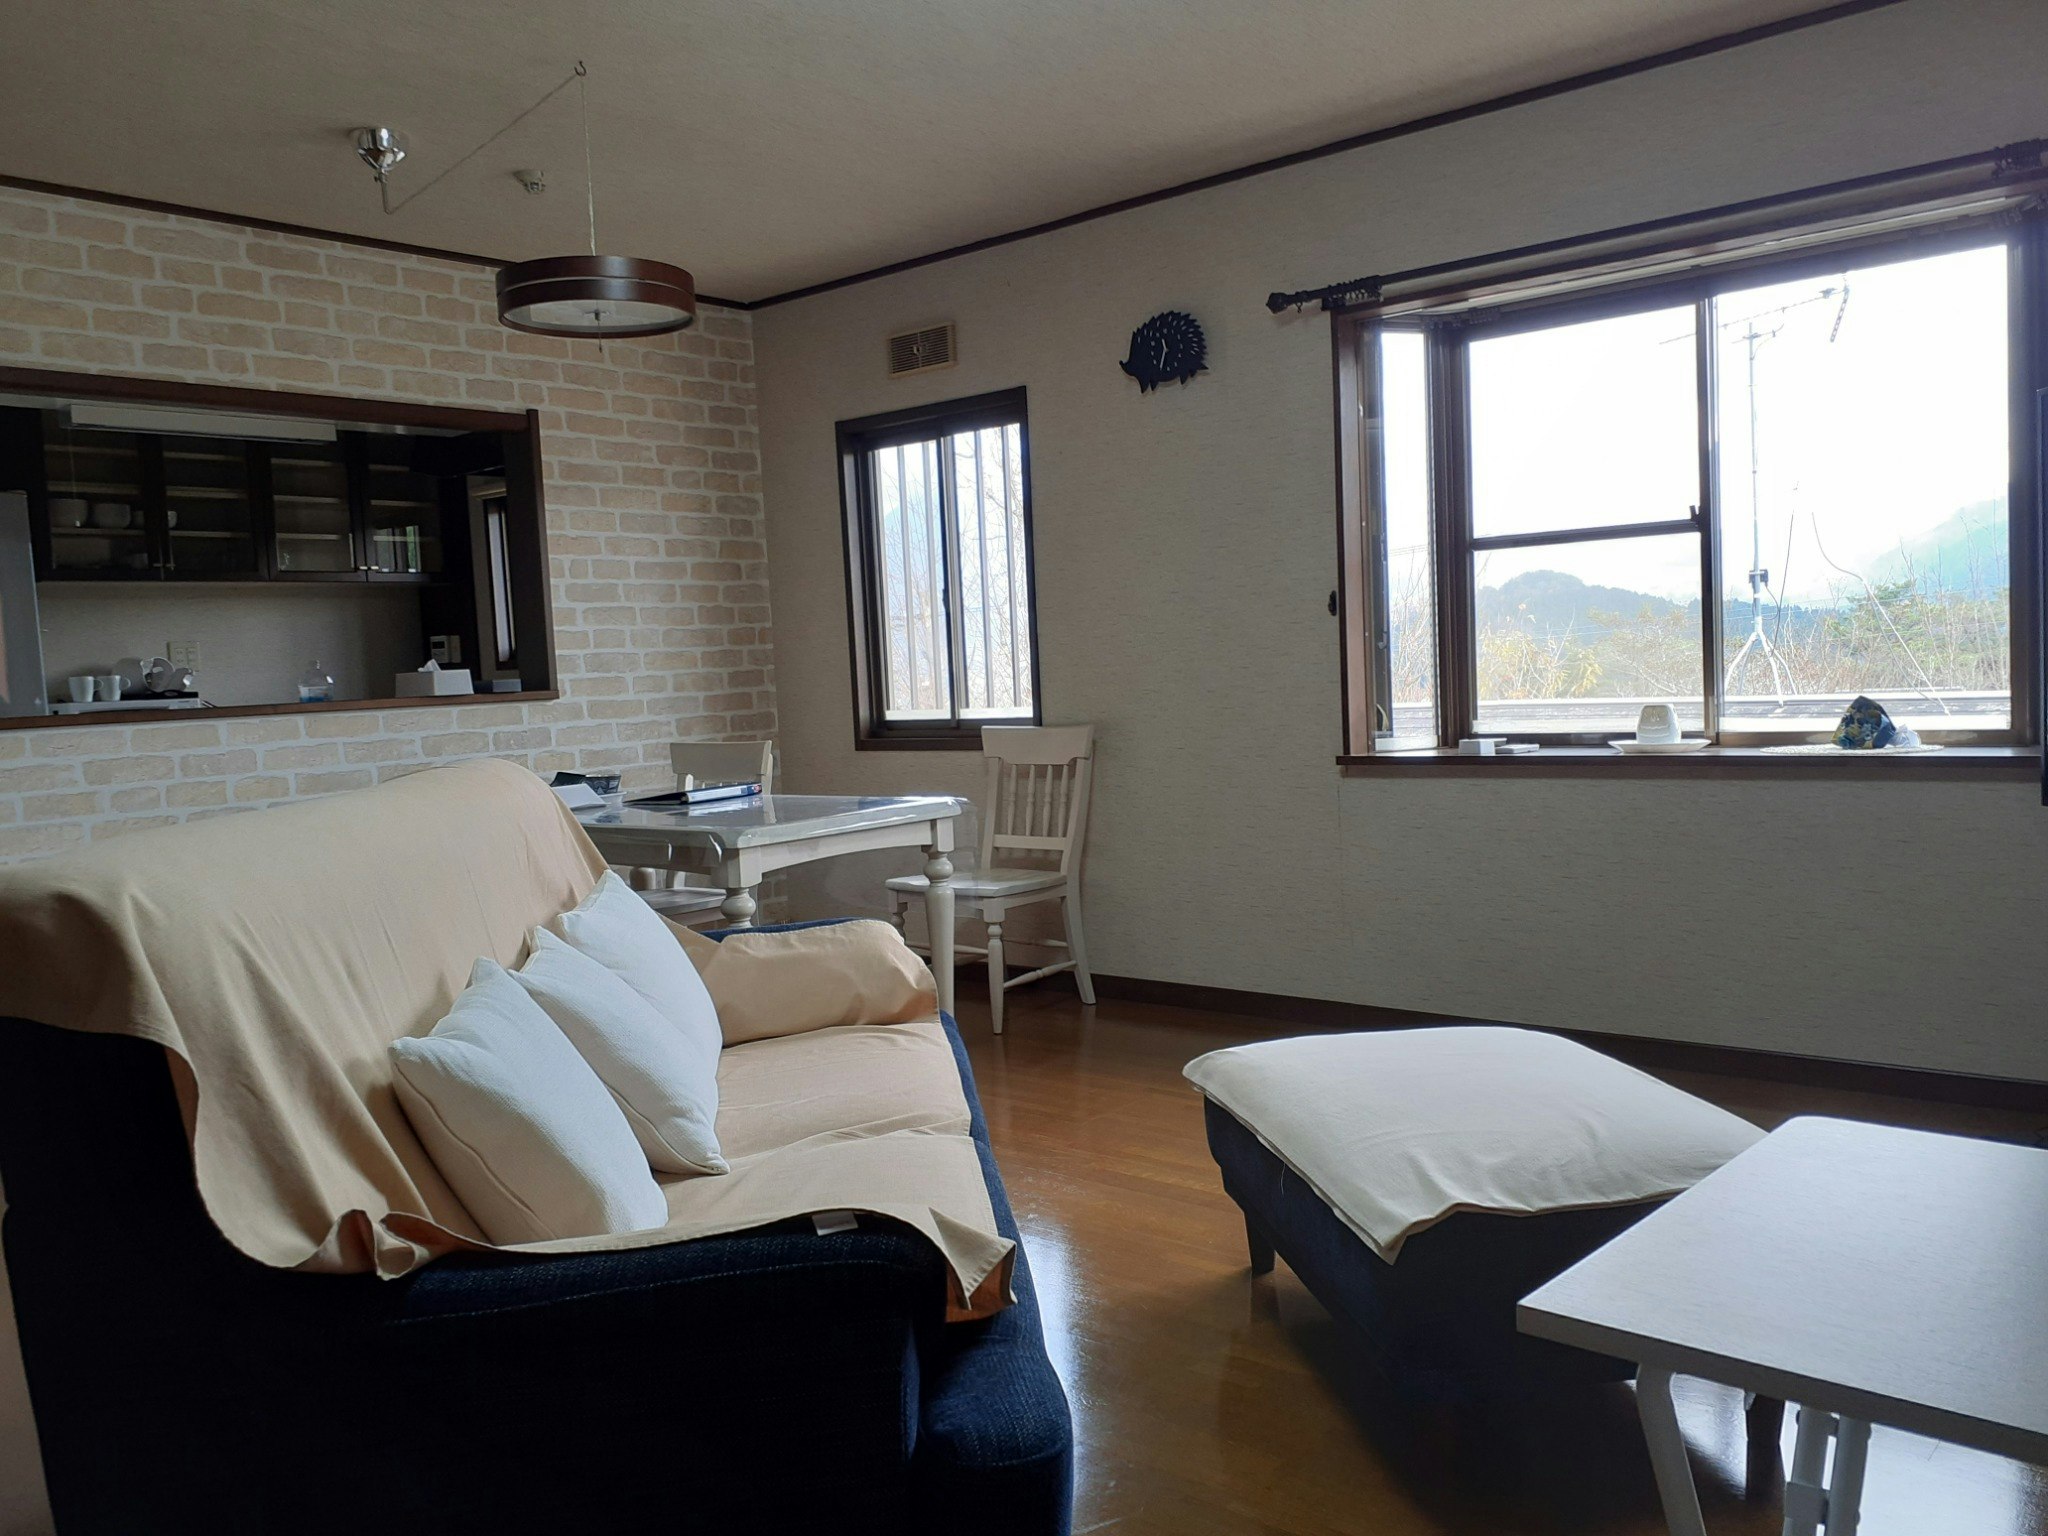 「阿蘇岳一望と自家温泉」の1棟貸切別荘、Open2年目で広く綺麗な内装、Switch貸出